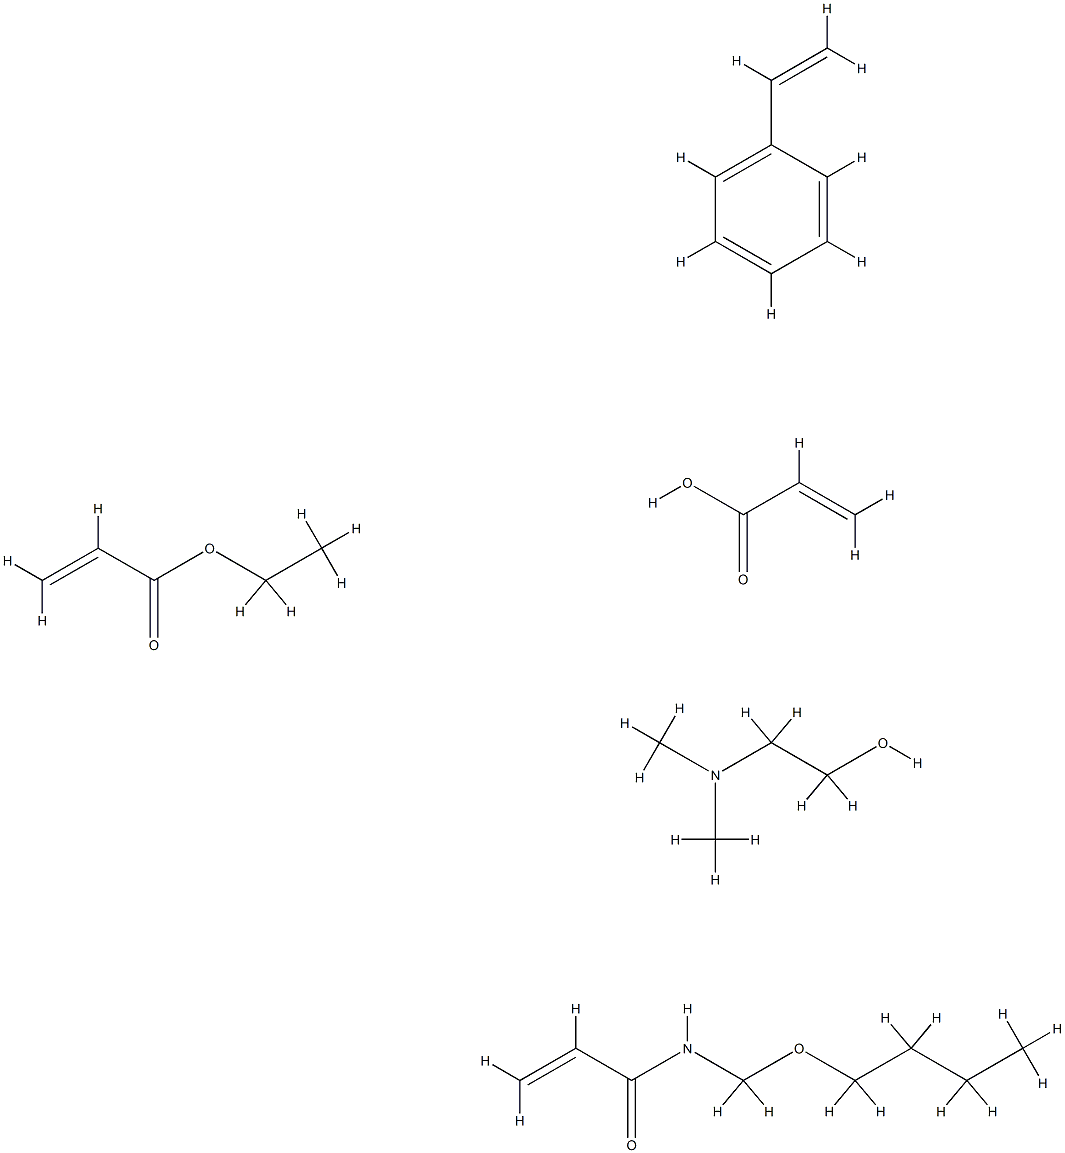 2-프로펜산,N-(부톡시메틸)-2-프로펜아미드,에테닐벤젠및에틸2-프로페노에이트와의중합체,화합물.2-(디메틸아미노)에탄올함유